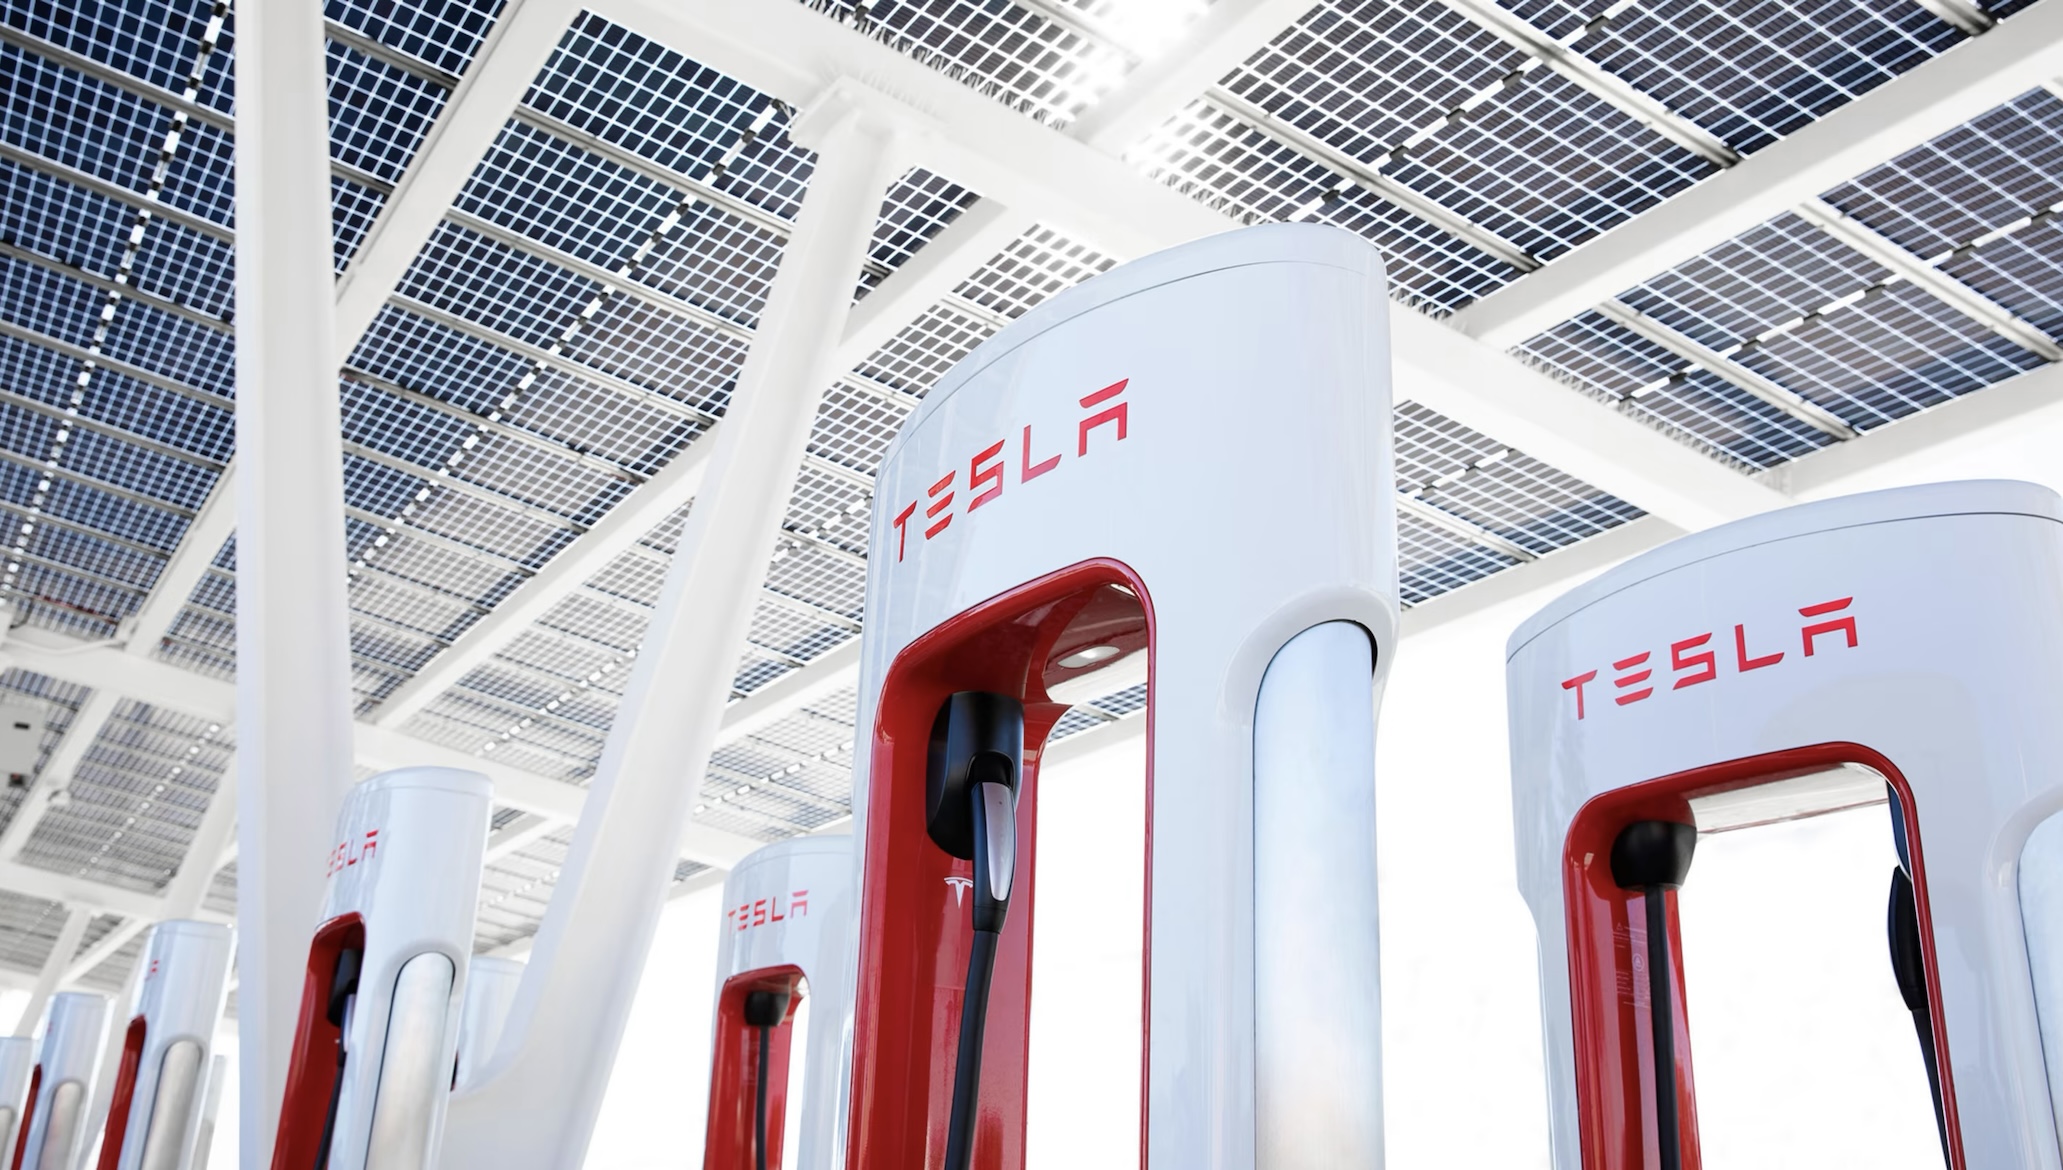 Tesla-Supercharger für alle: So laden Sie diesen Sommer auf!